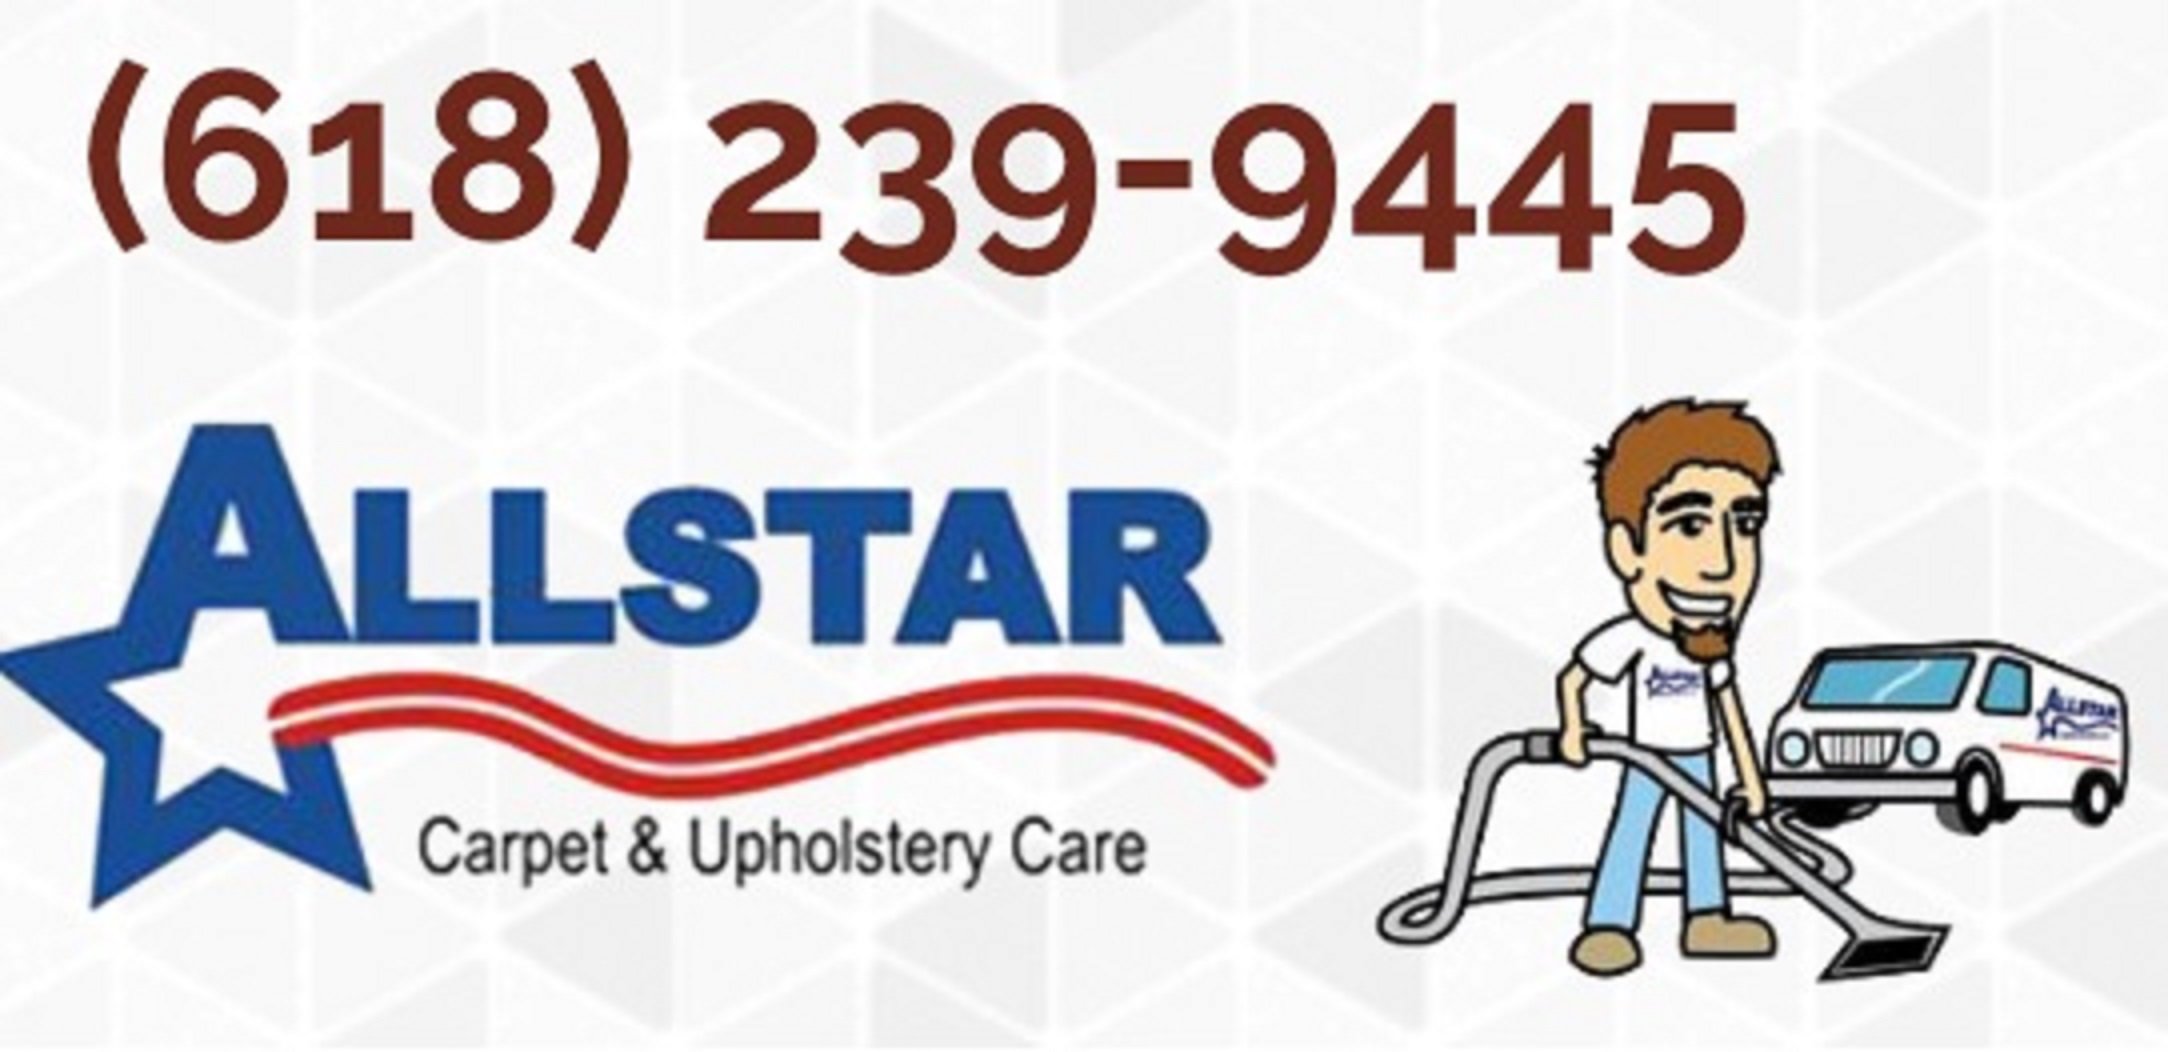 Allstar Carpet & Upholstery Care Logo